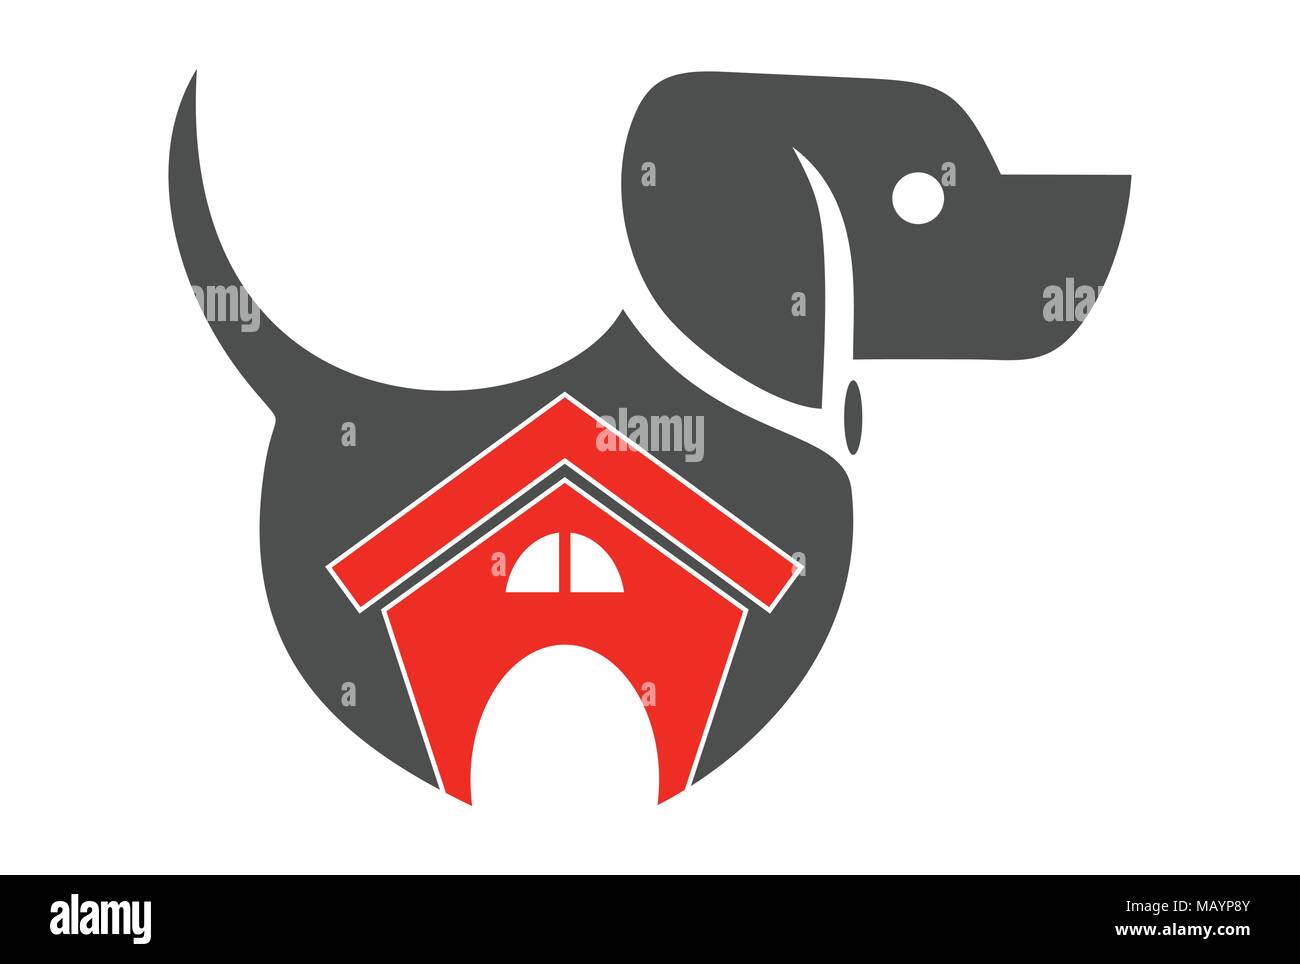 house home dog logo icon Stock Vector